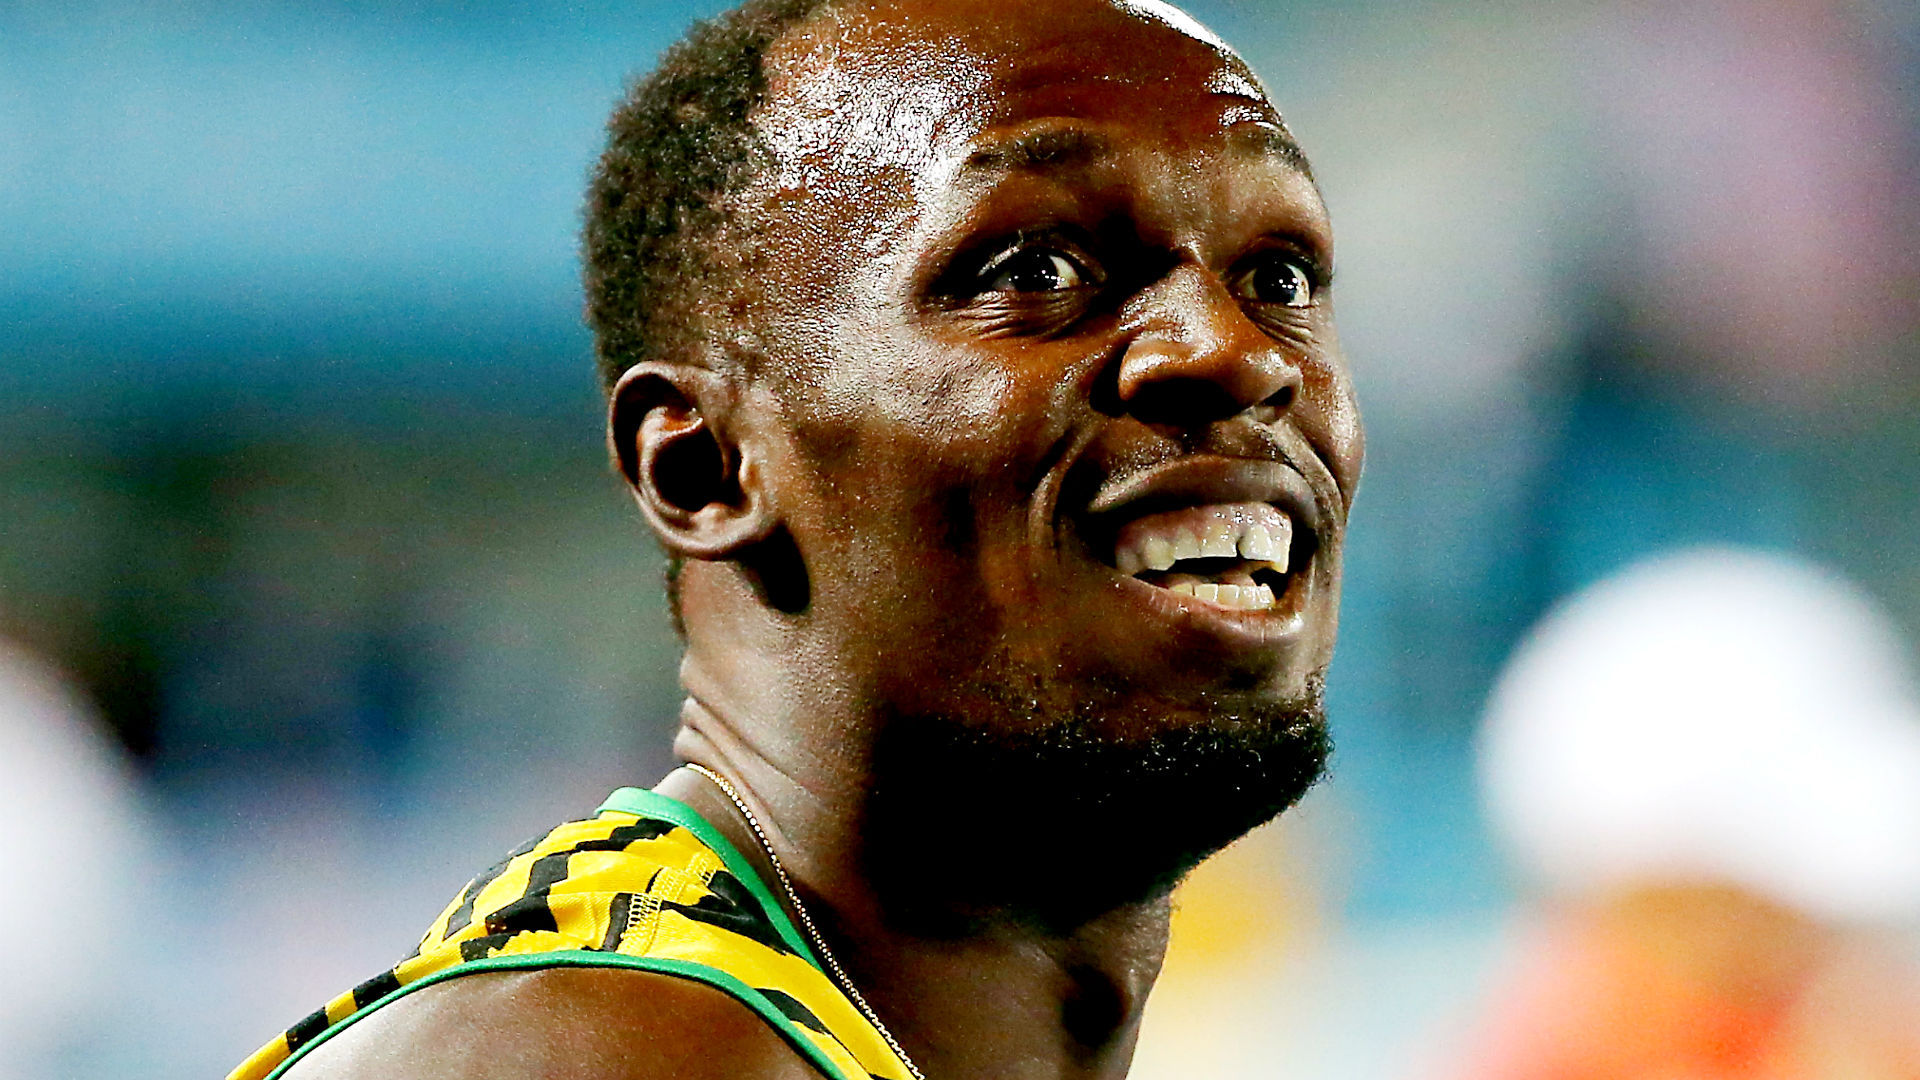 Usain Bolt Hd 2016 , HD Wallpaper & Backgrounds